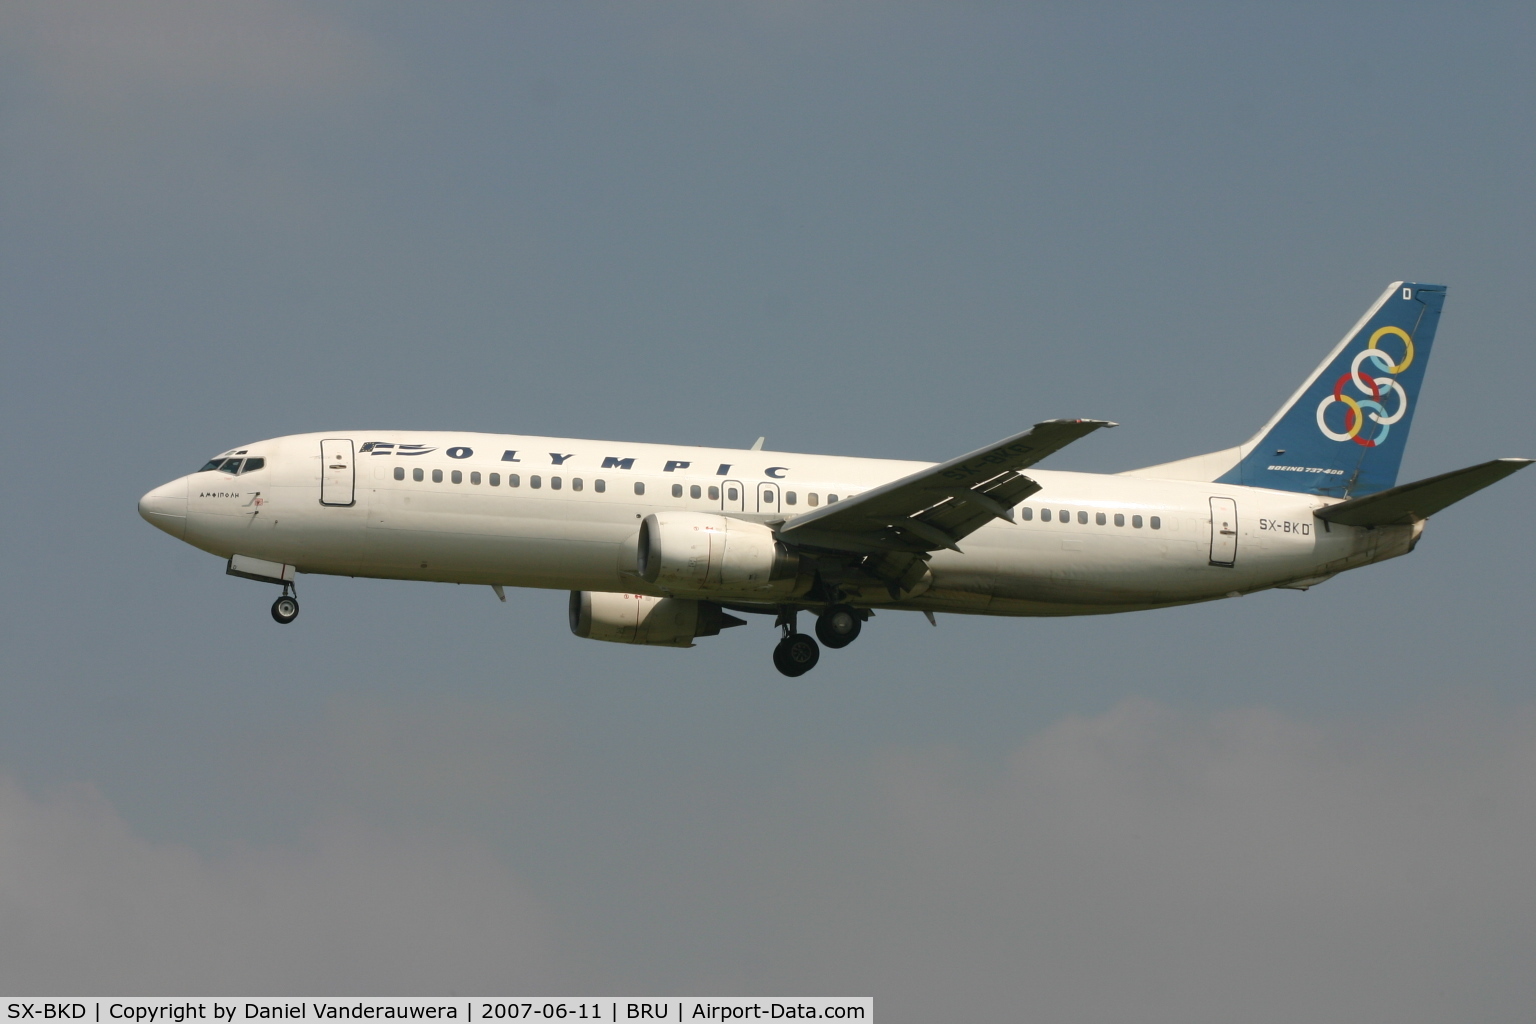 SX-BKD, 1991 Boeing 737-484 C/N 25362, flight OA145 is descending to rwy 25L